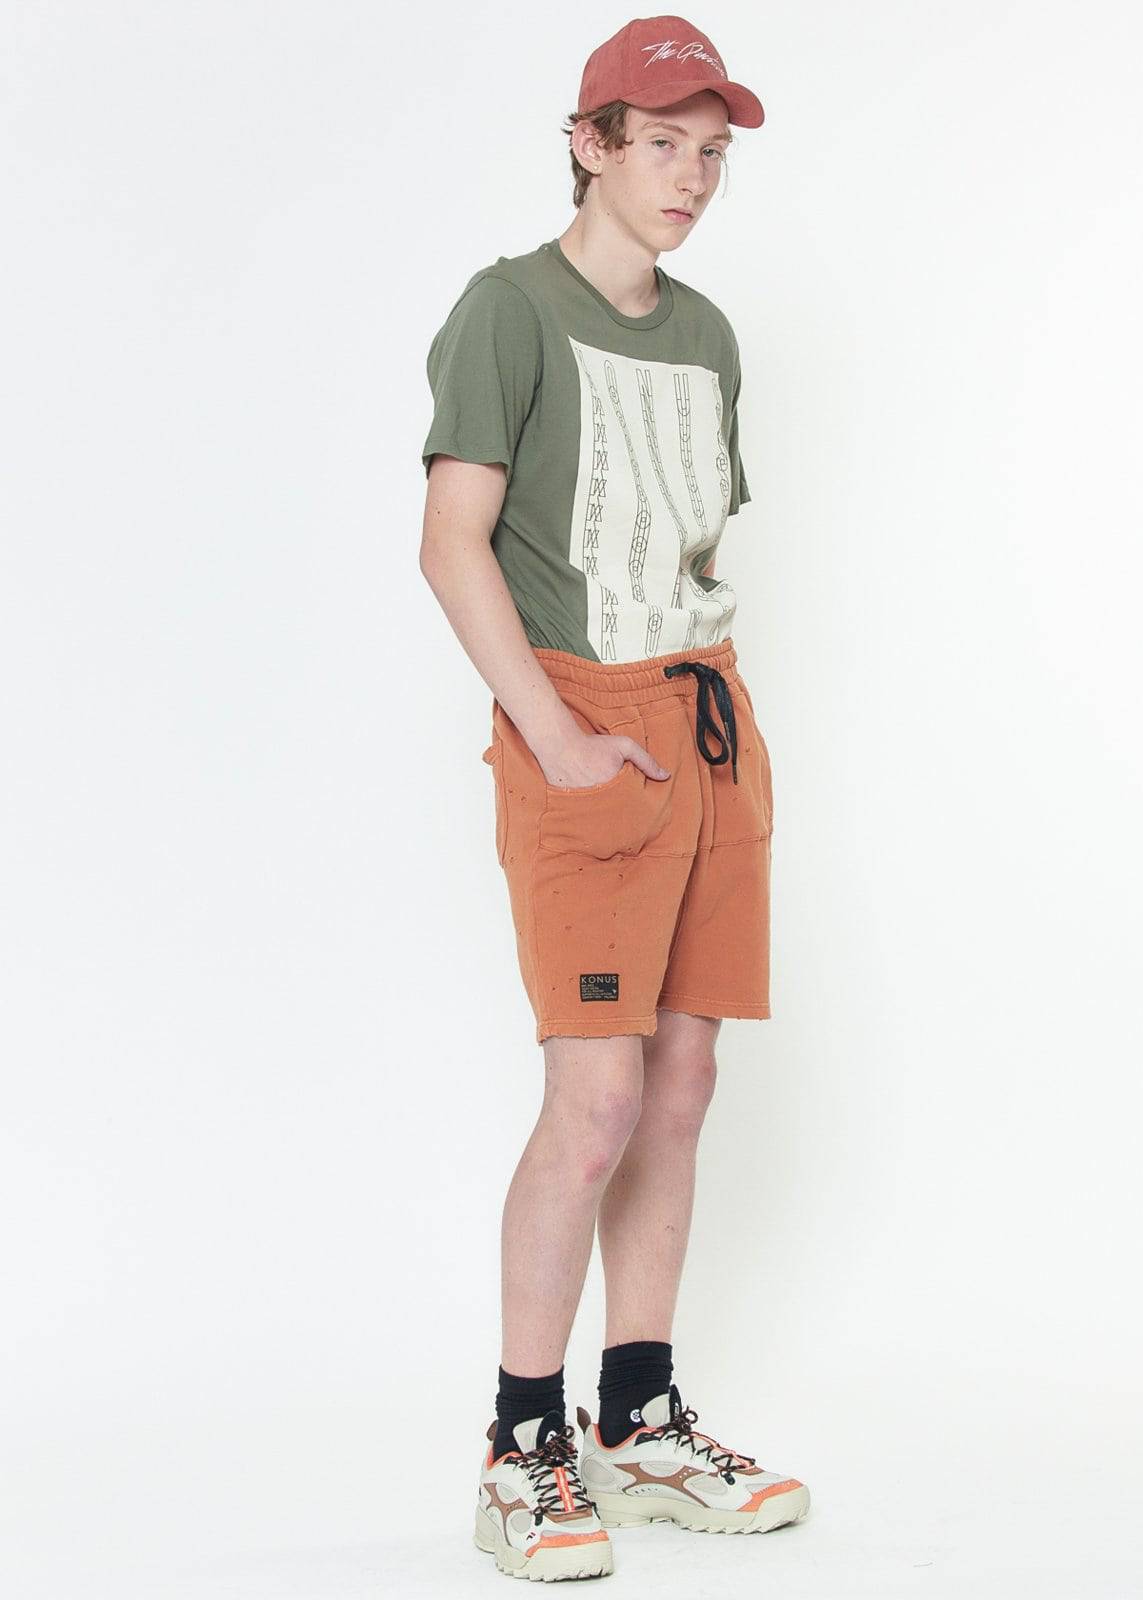 Konus Men's Garment Dyed French Terry Shorts in Orange by Shop at Konus